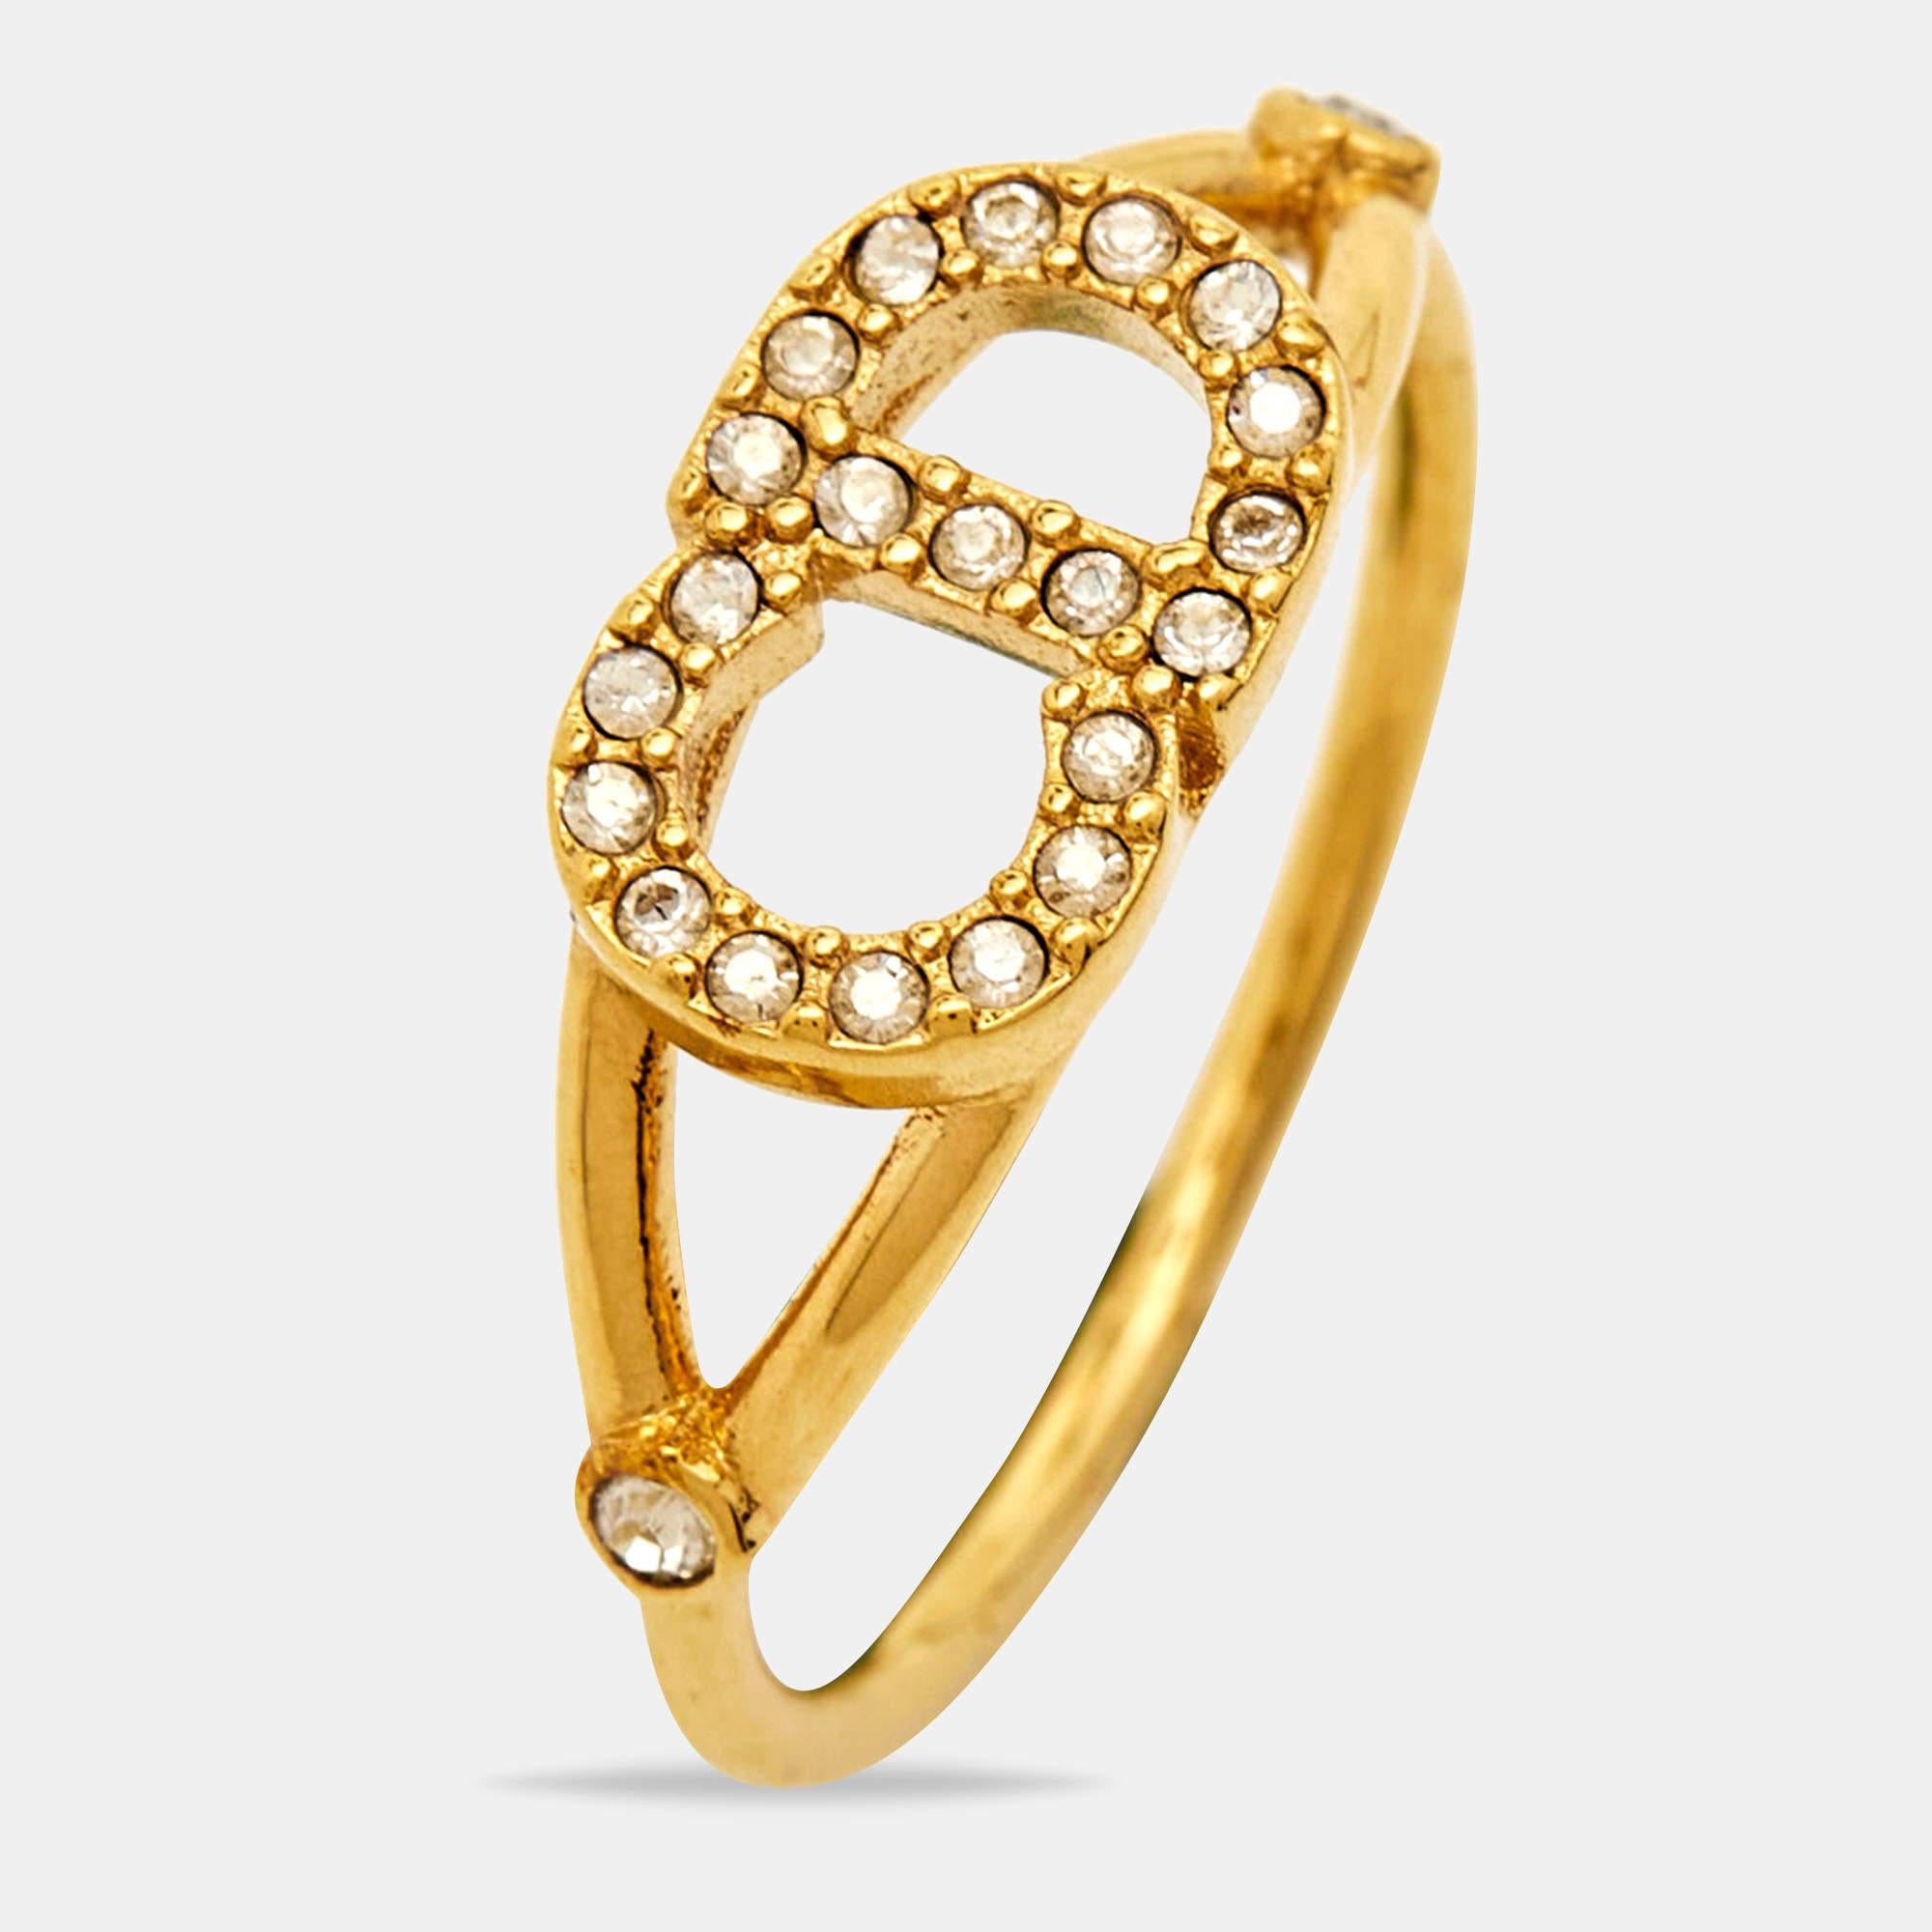 Um Ihre Finger auf elegante Weise zu schmücken, bietet Ihnen Dior diesen stilvollen Ring an. Er wurde aus hochwertigen MATERIALEN gefertigt und wird Ihren Look sofort aufwerten.

